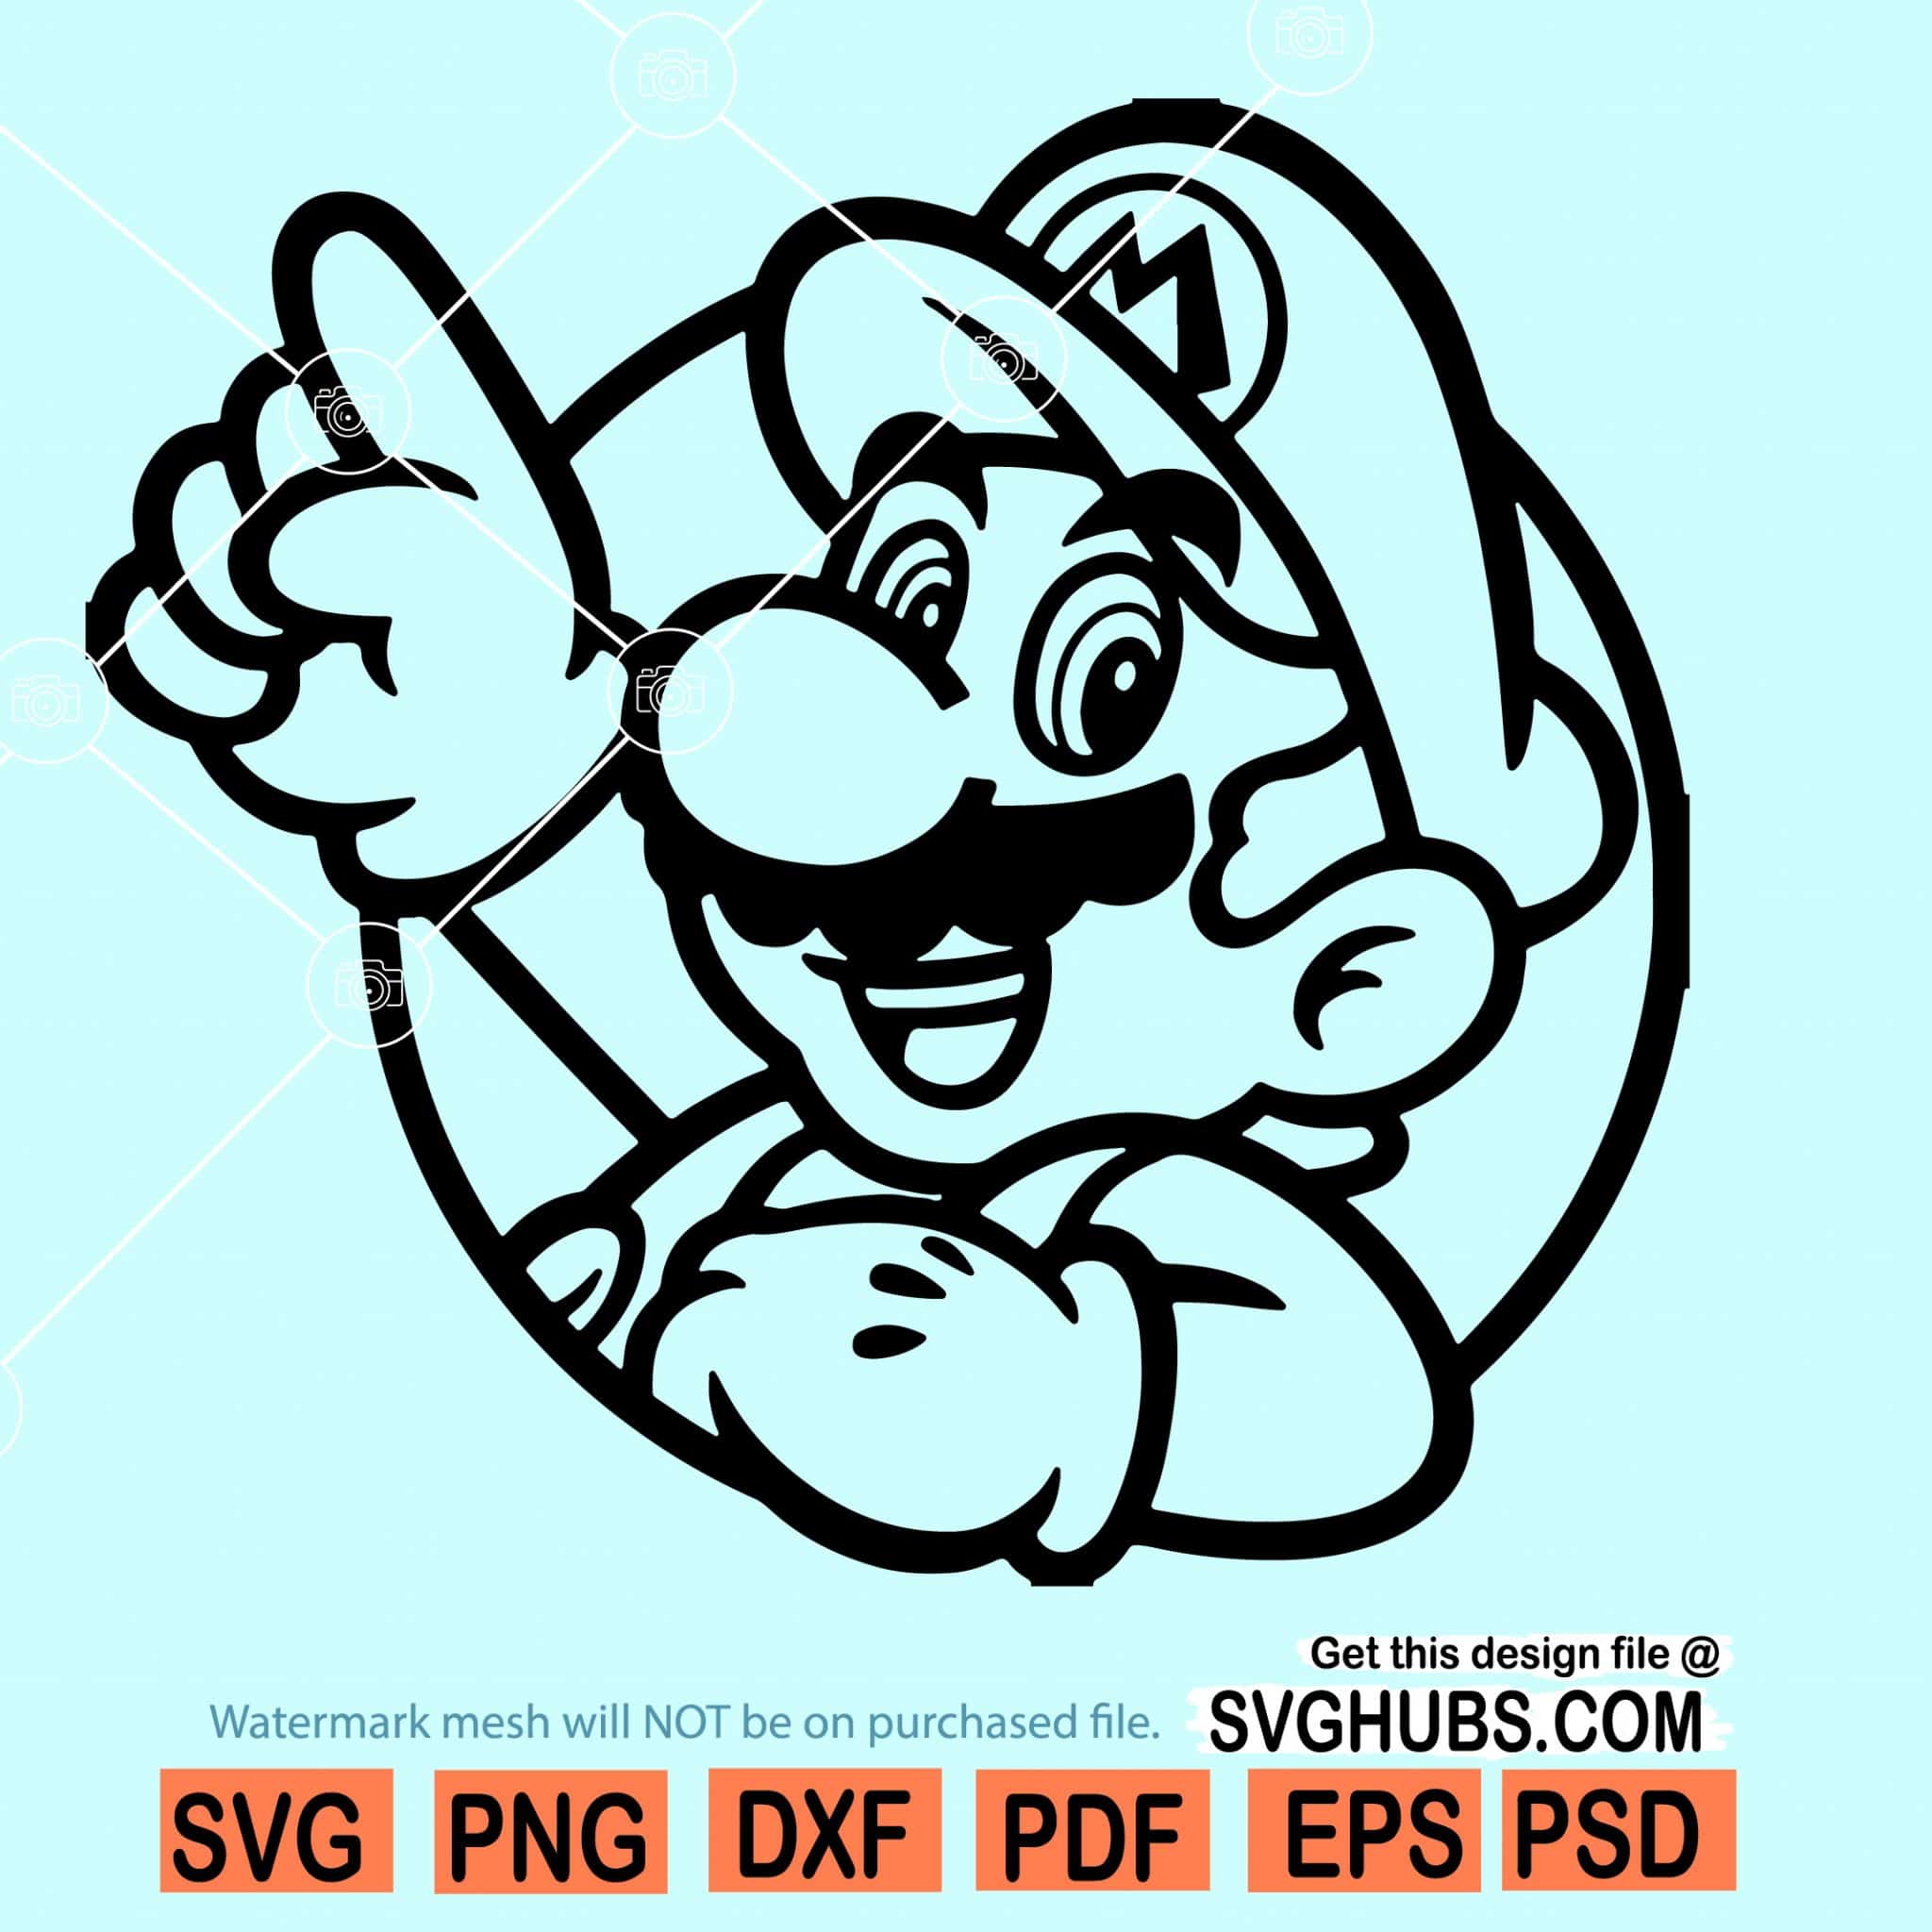 Super Mario svg, Mario svg, mario bros svg files - Svg Hubs